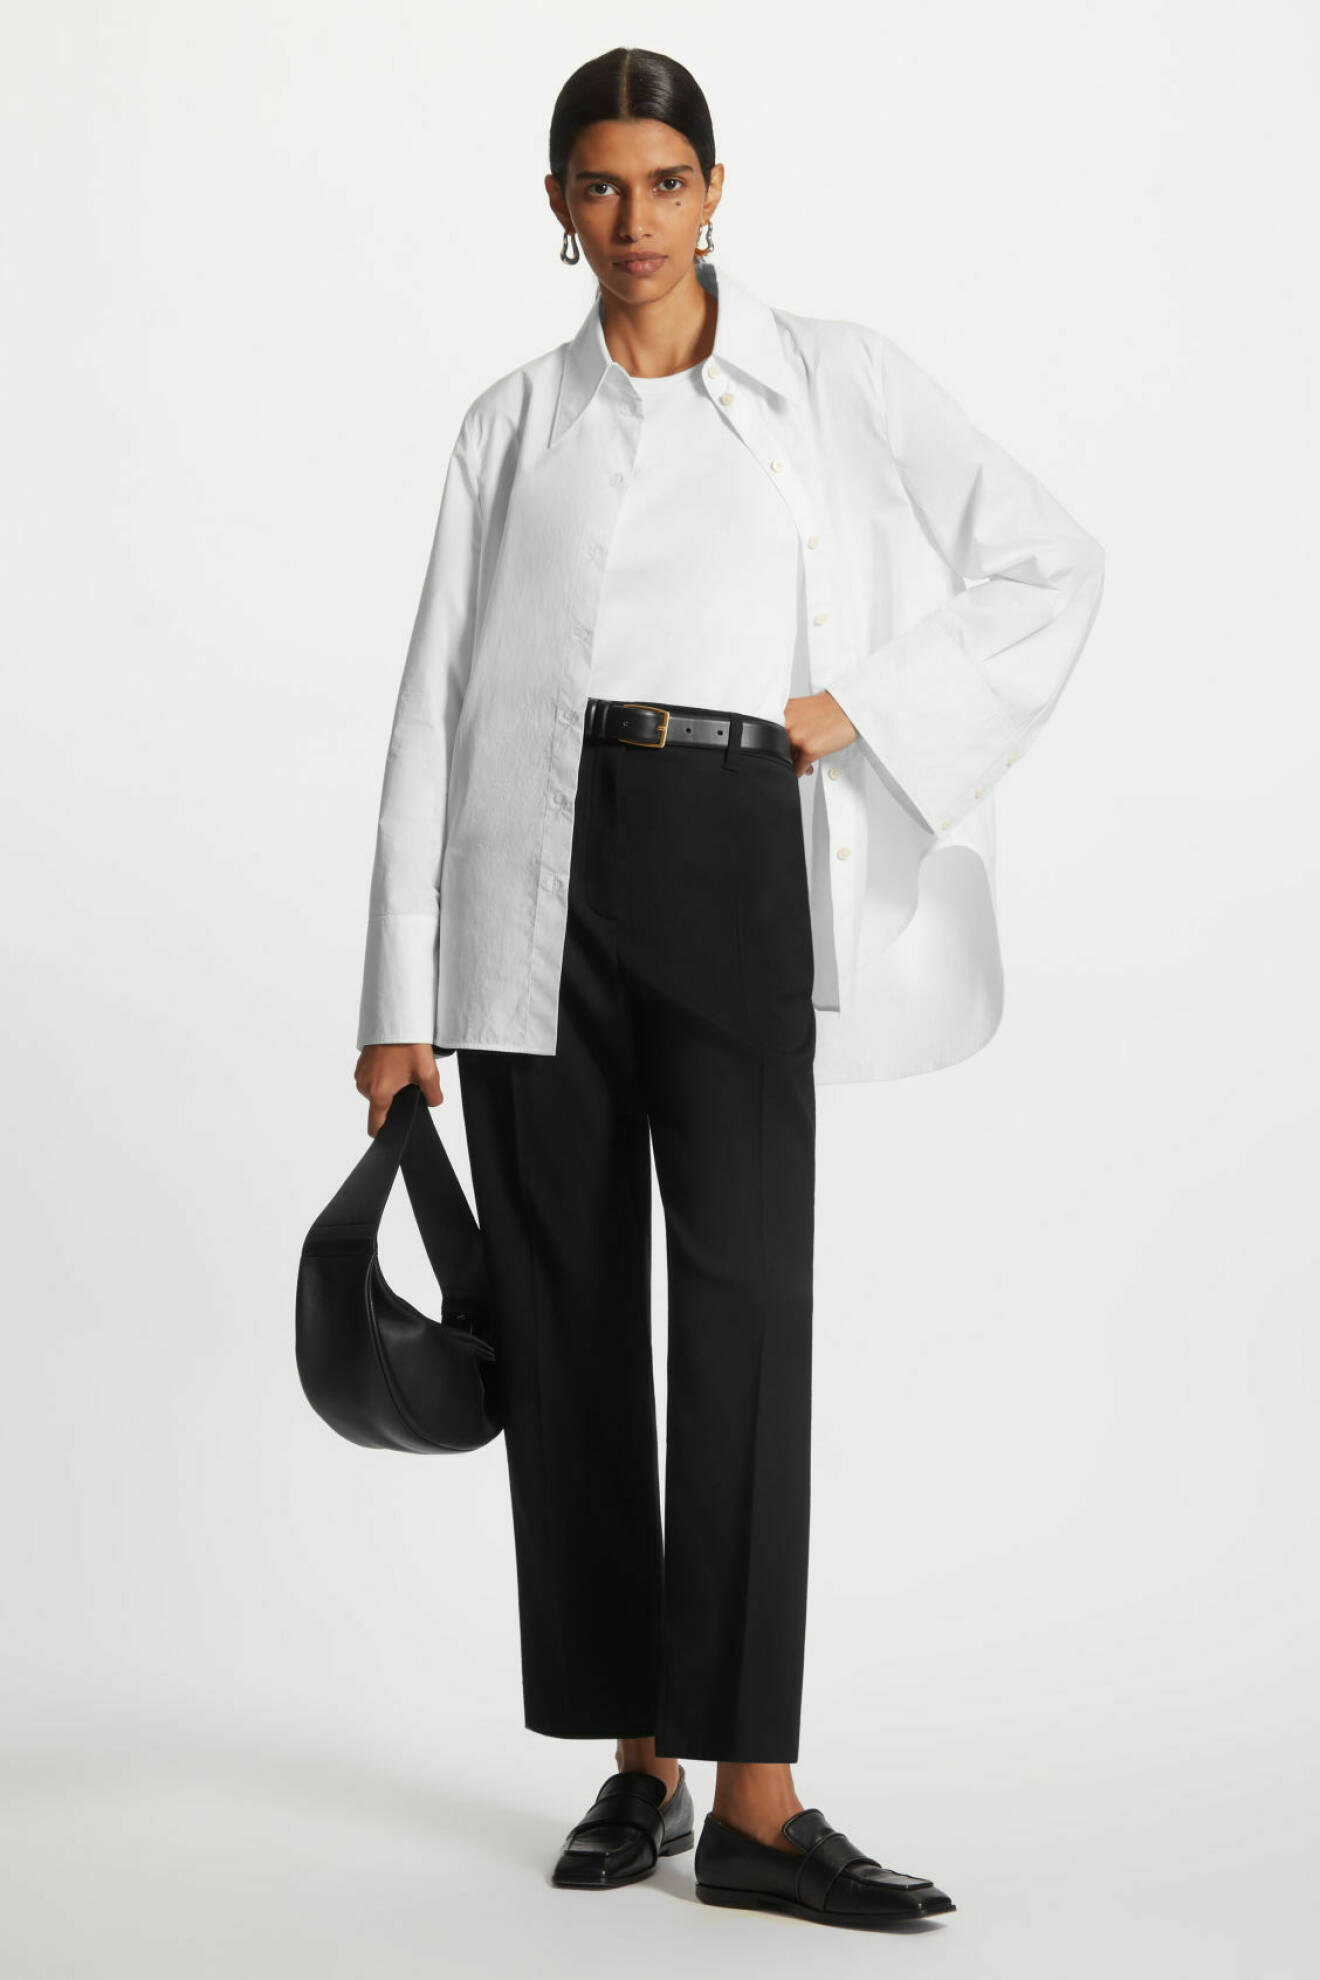 Vitt linne matchas med vit skjorta och svarta kostymbyxor hos COS.